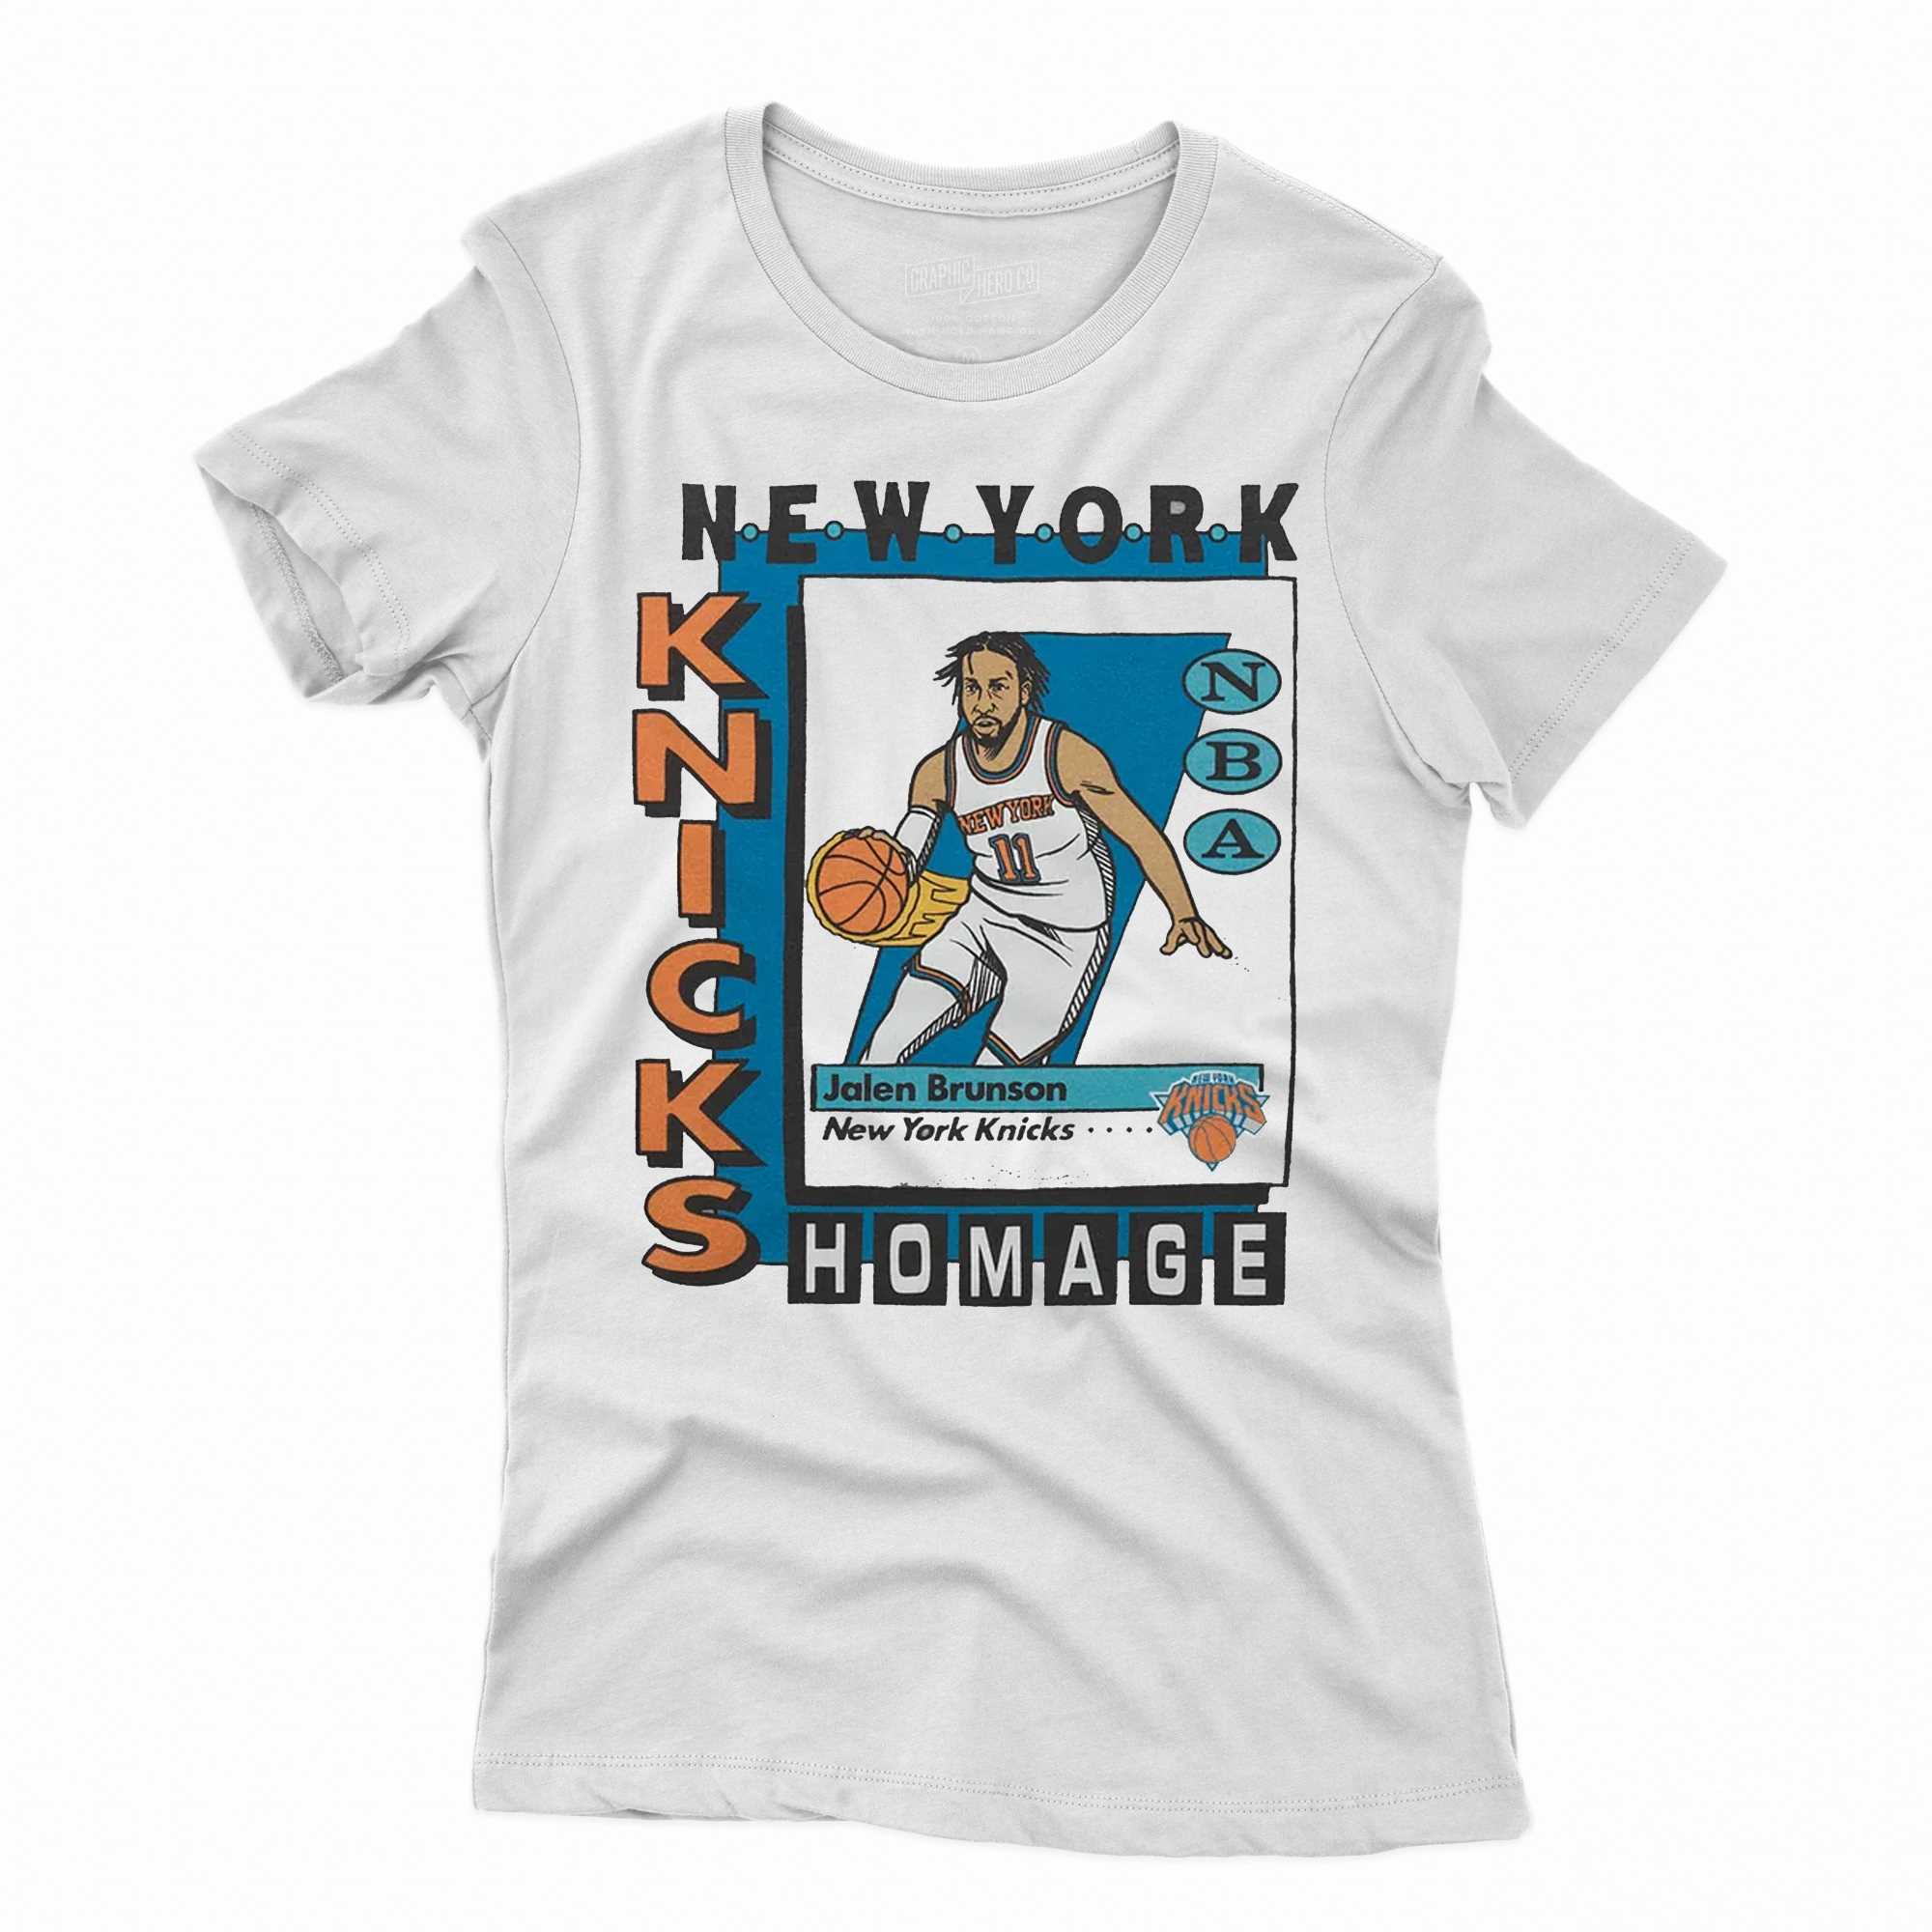 New York Knicks Trading Card Jalen Brunson Nba Player Shirt